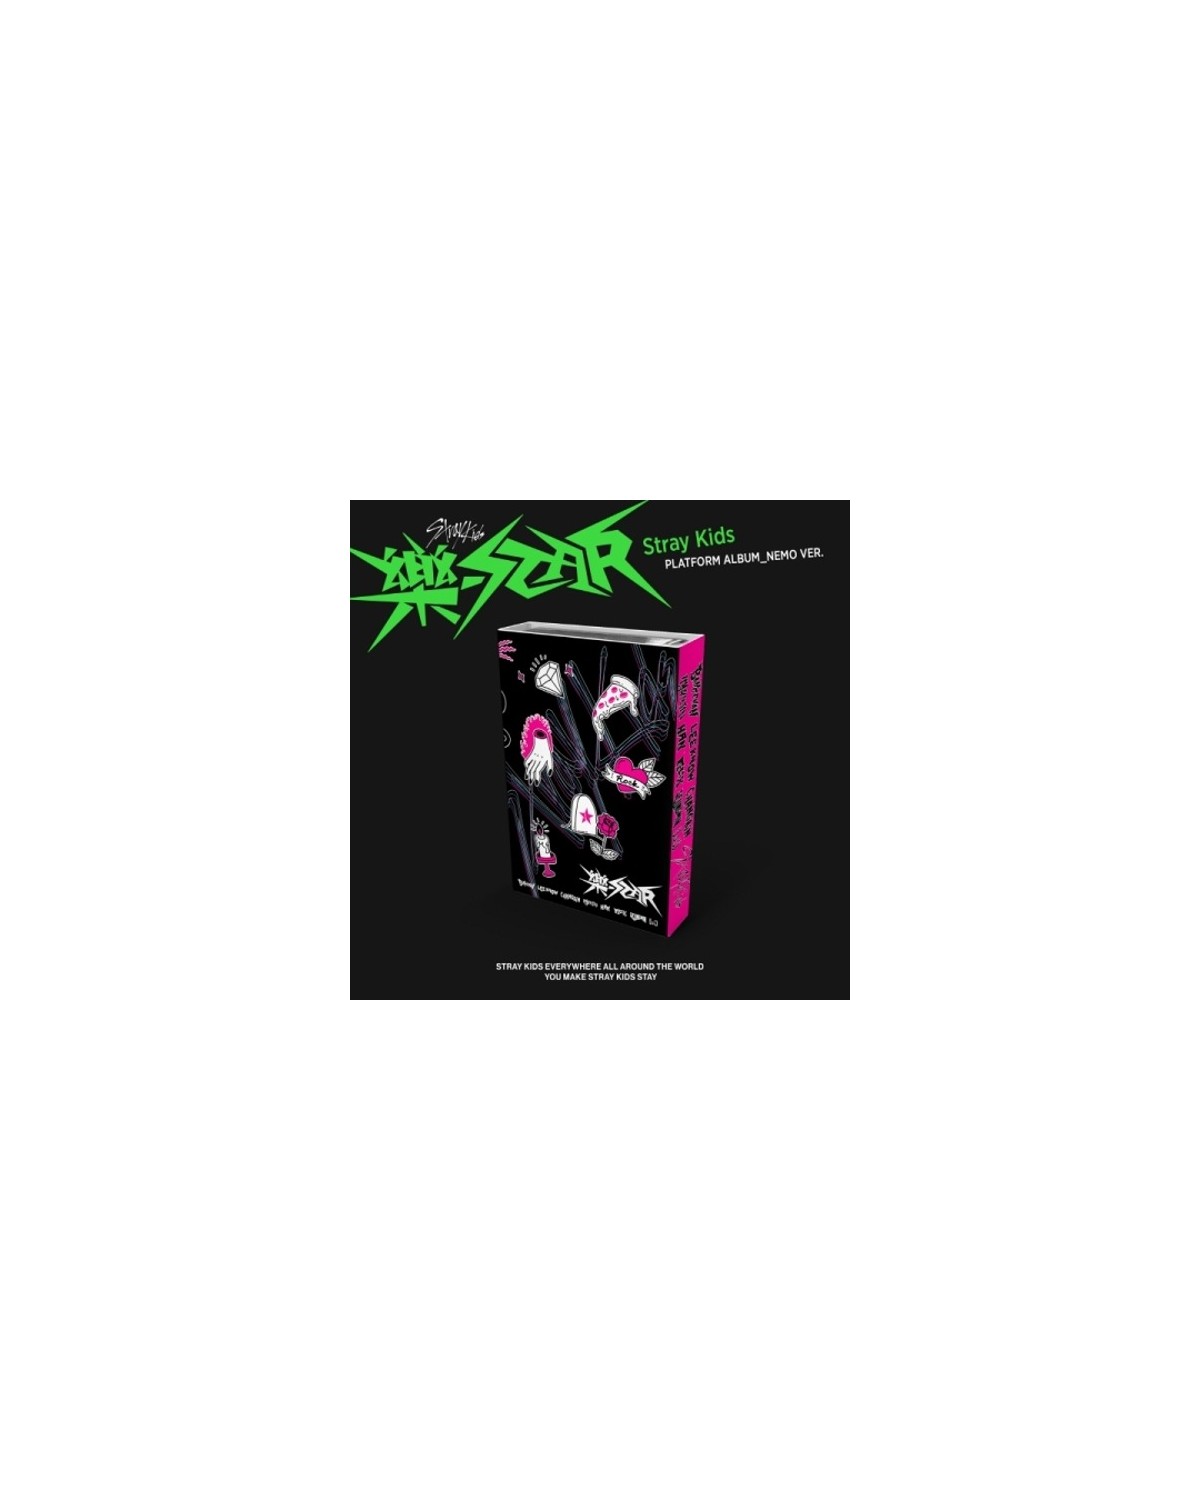 Stray Kids Album - ROCK-STAR,(ROCK VER.) 14998045092 - Sklepy